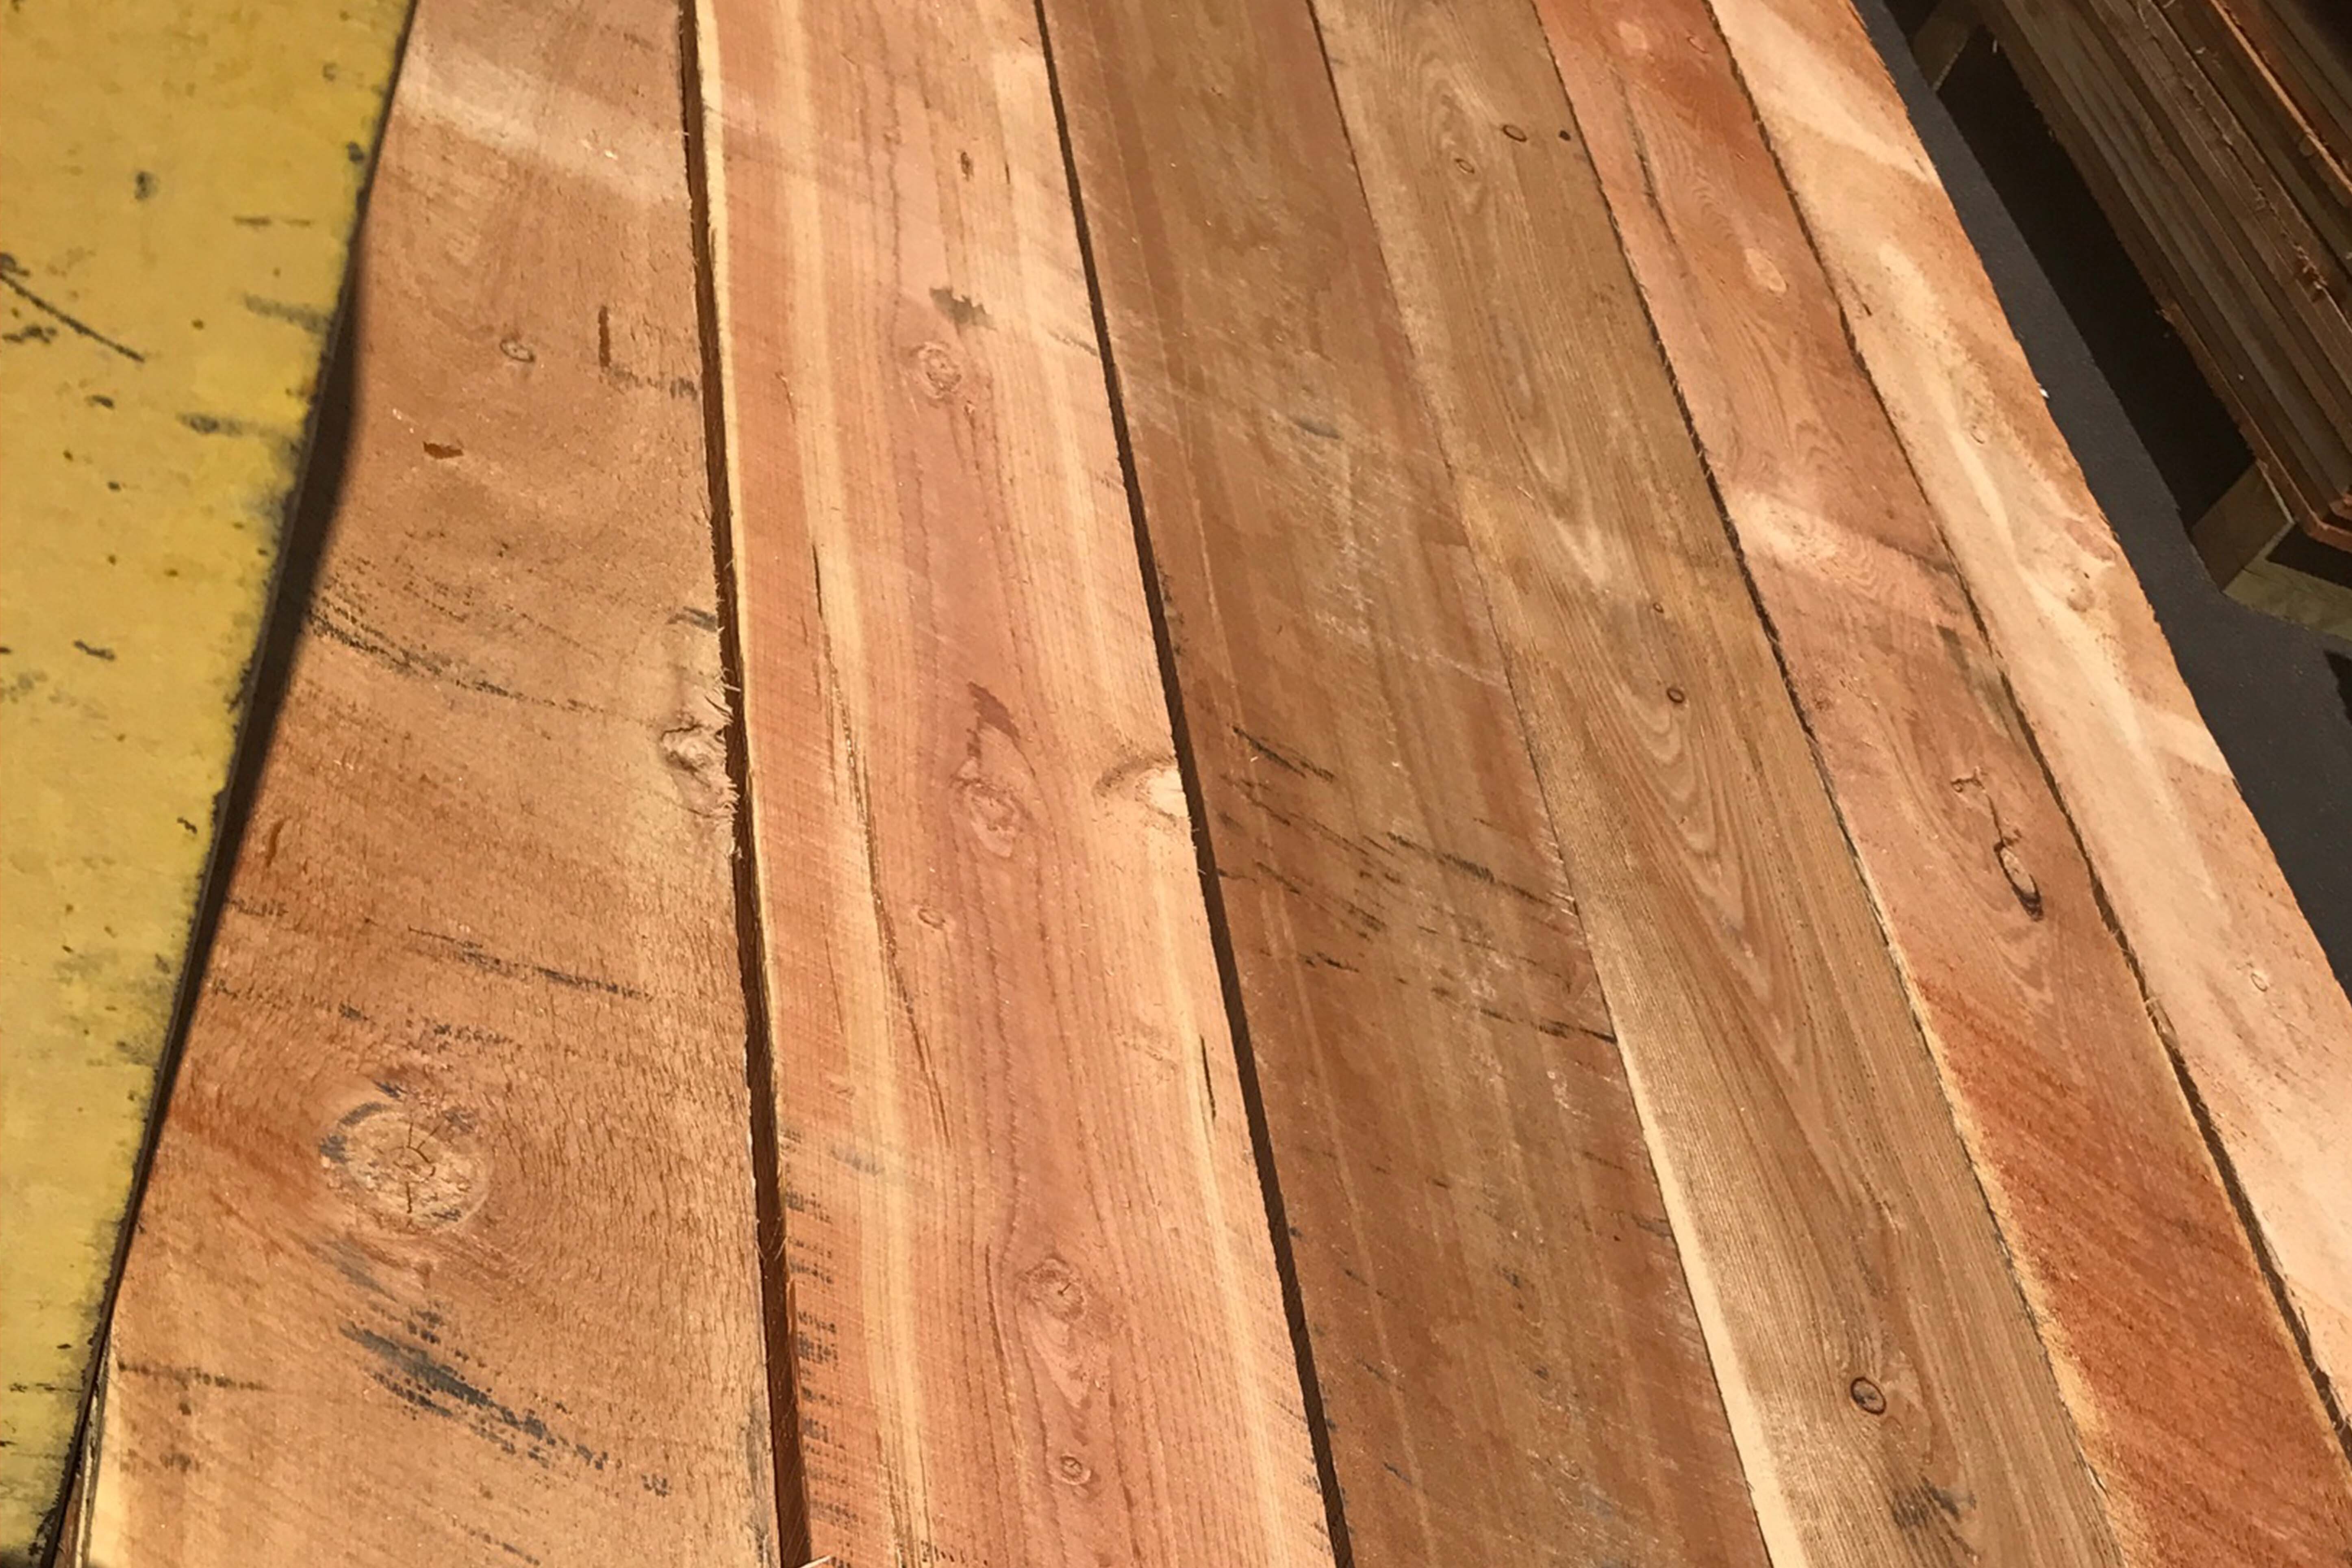 Marks Lumber: How to Remove Black Marks on Lumber - Mark's Lumber